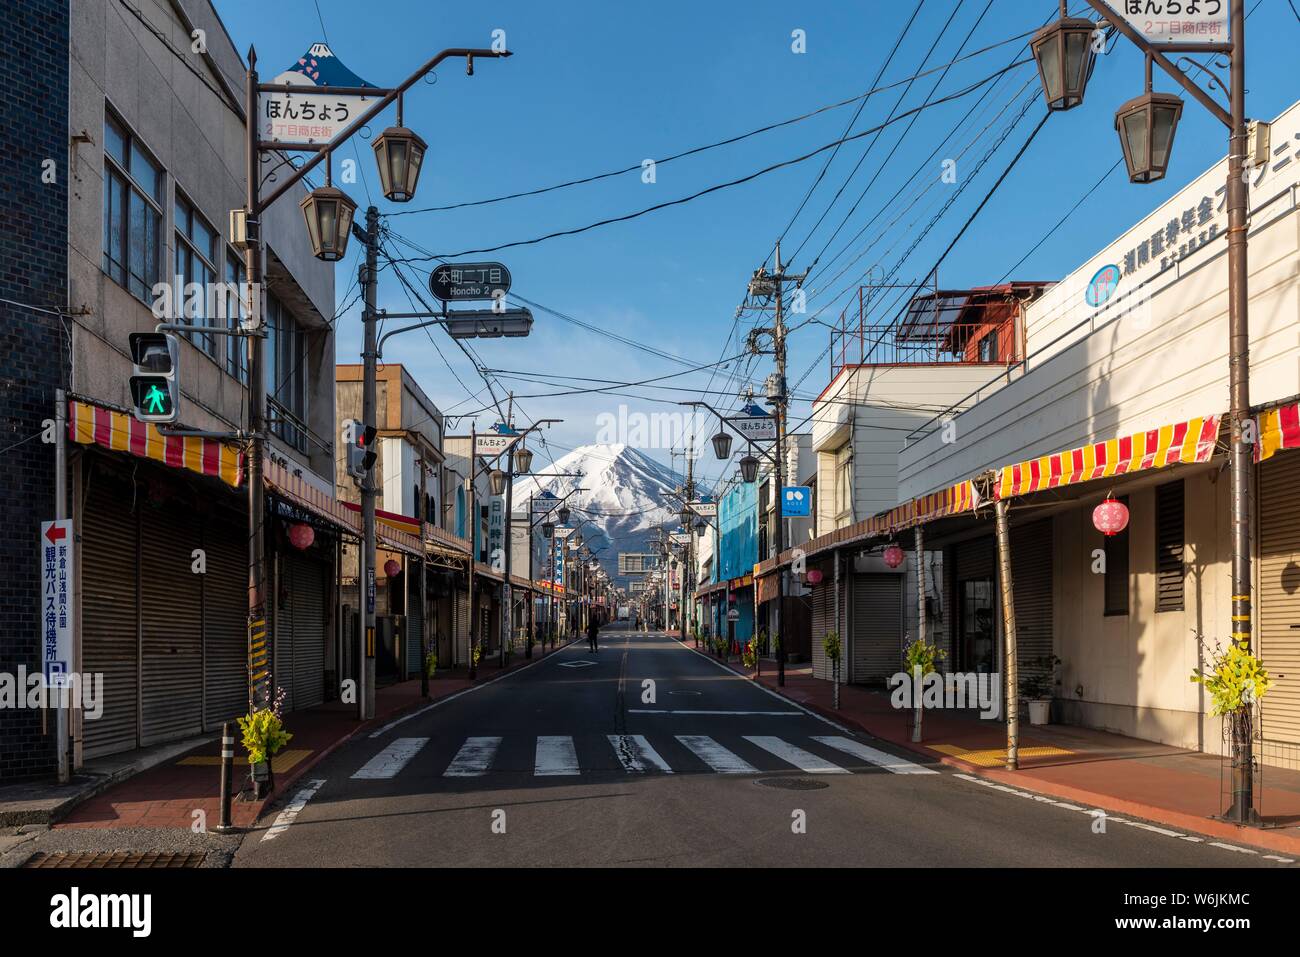 Scène de rue dans un quartier résidentiel, vue du volcan Mt. Fuji, Fujiyoshida, préfecture de Yamanashi, Japon Banque D'Images